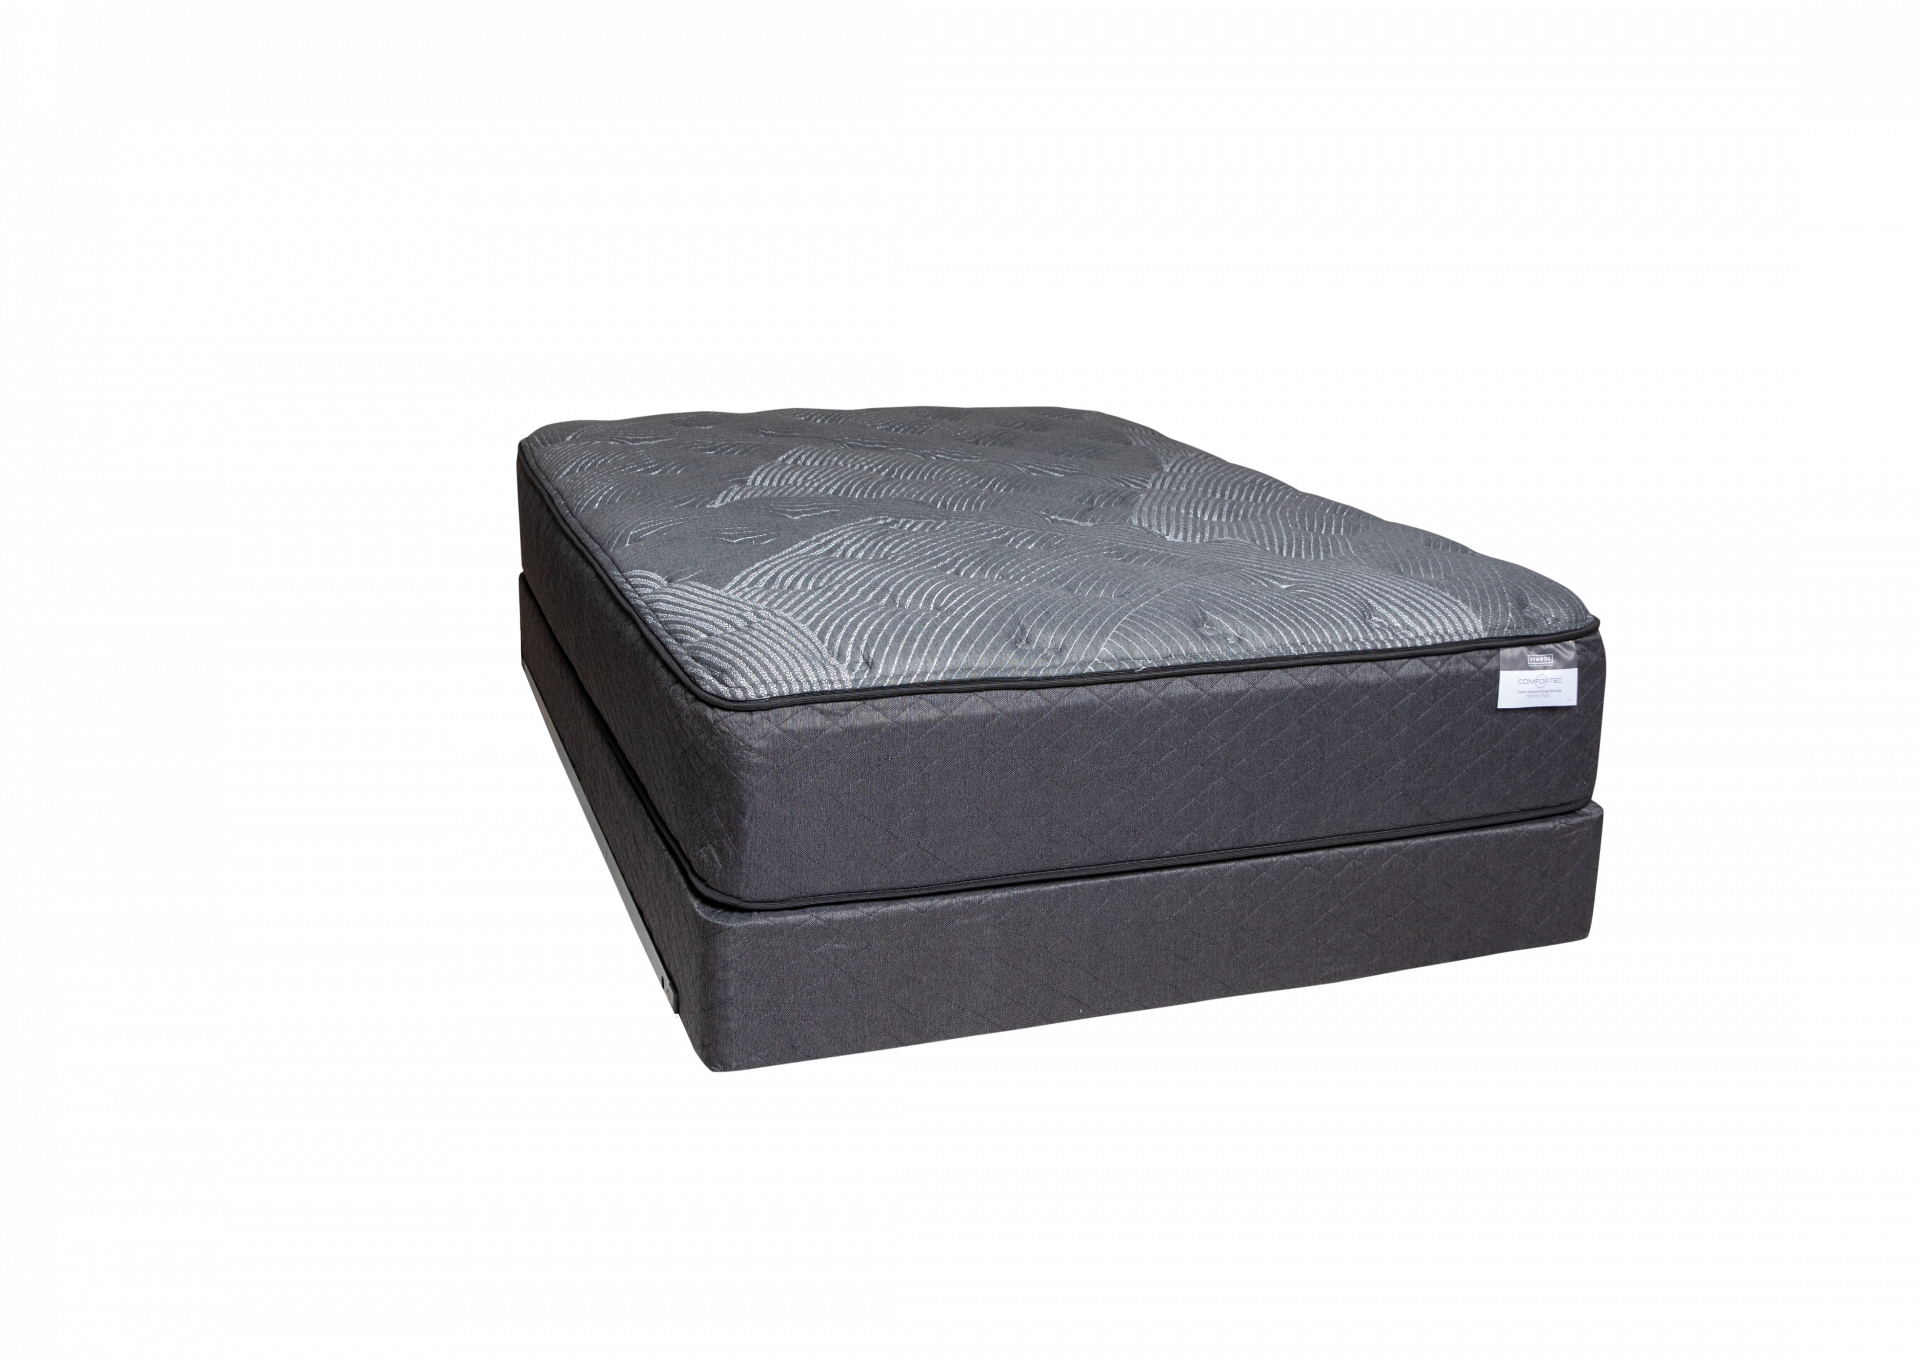 Harlow Plush Twin size mattress set by Symbol Mattress,Symbol Mattress